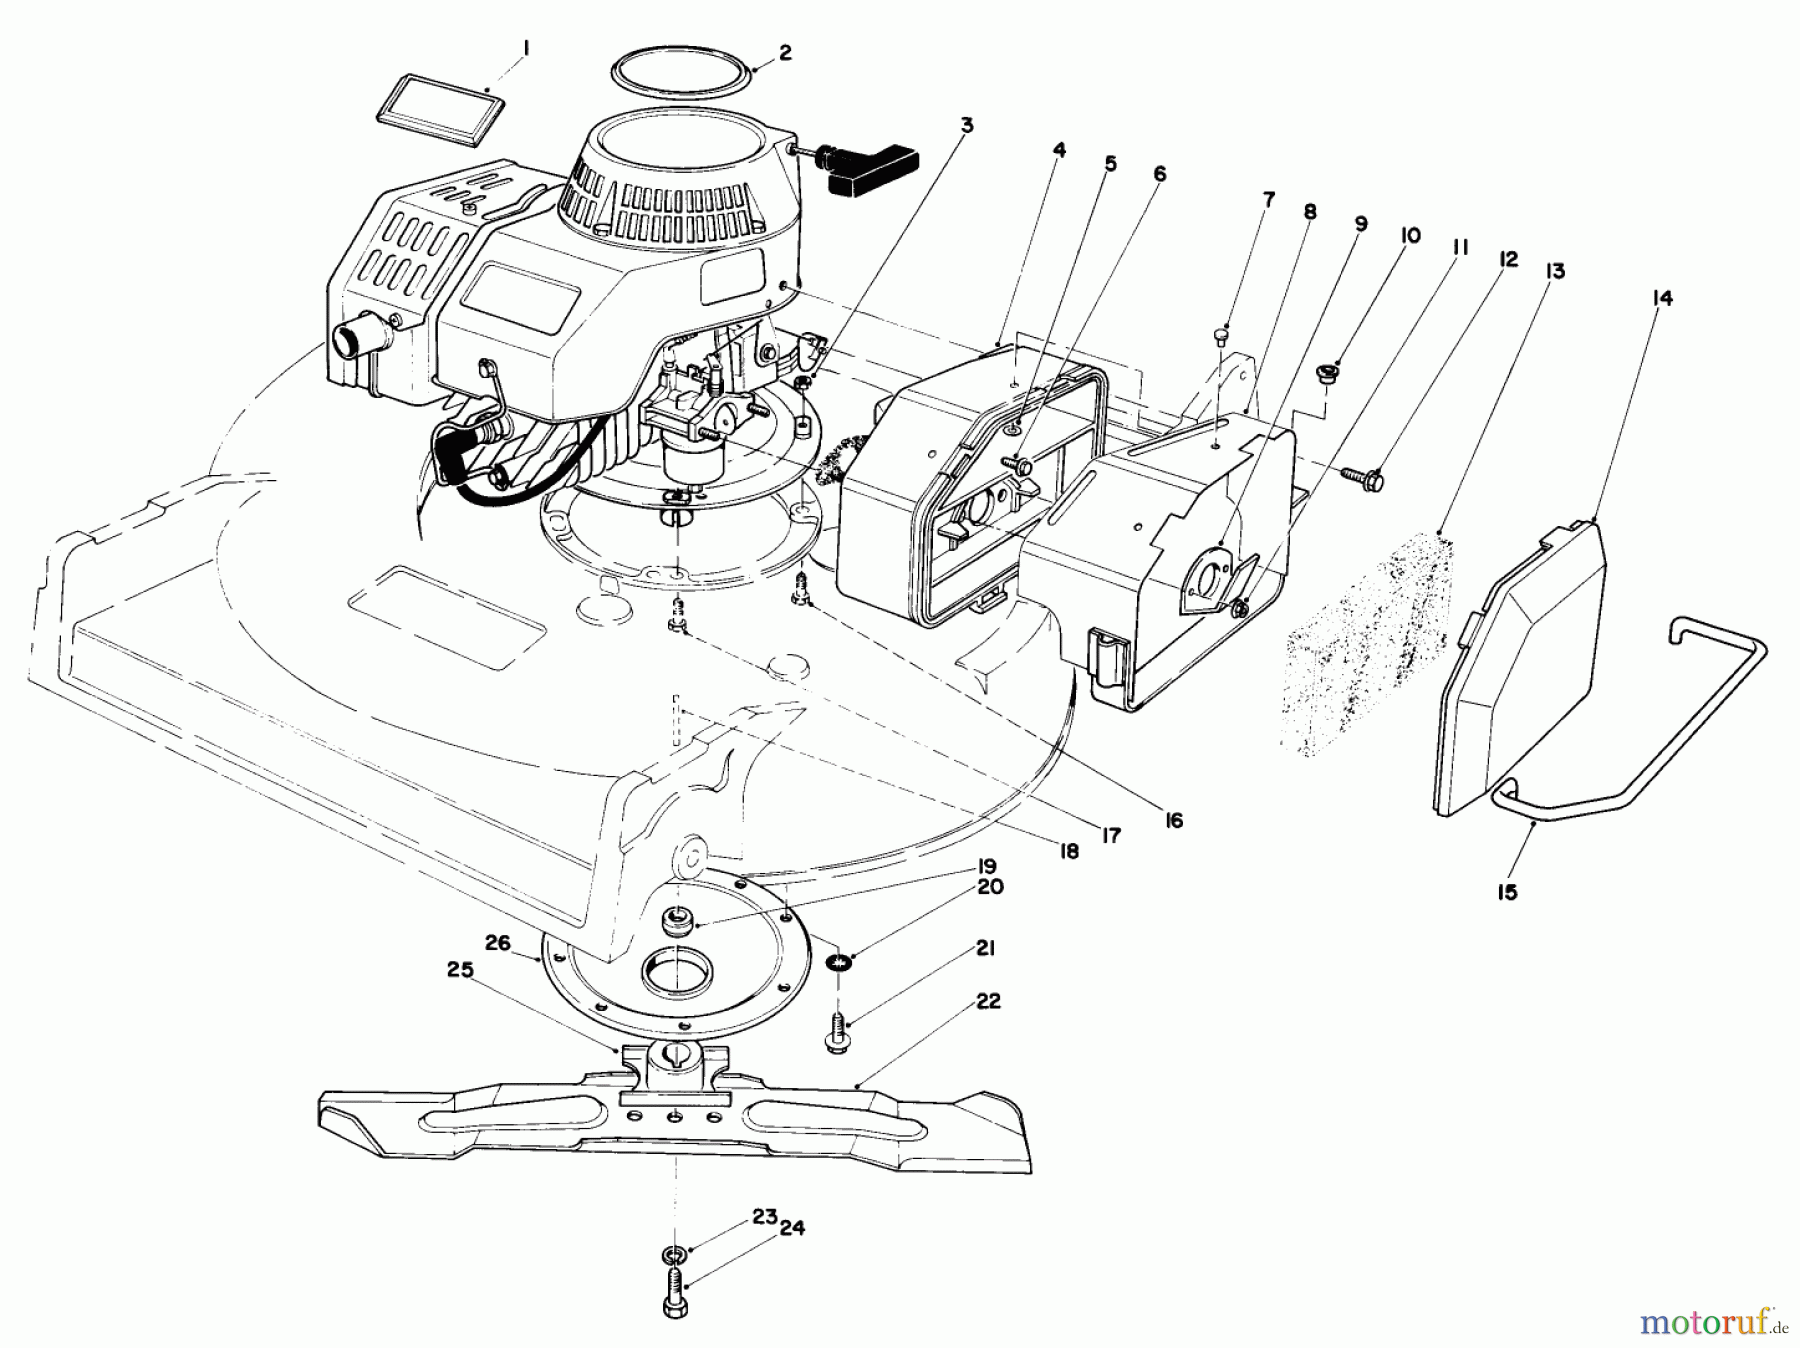  Toro Neu Mowers, Walk-Behind Seite 2 22030 - Toro Lawnmower, 1987 (7000001-7999999) ENGINE ASSEMBLY (MODEL 22030)